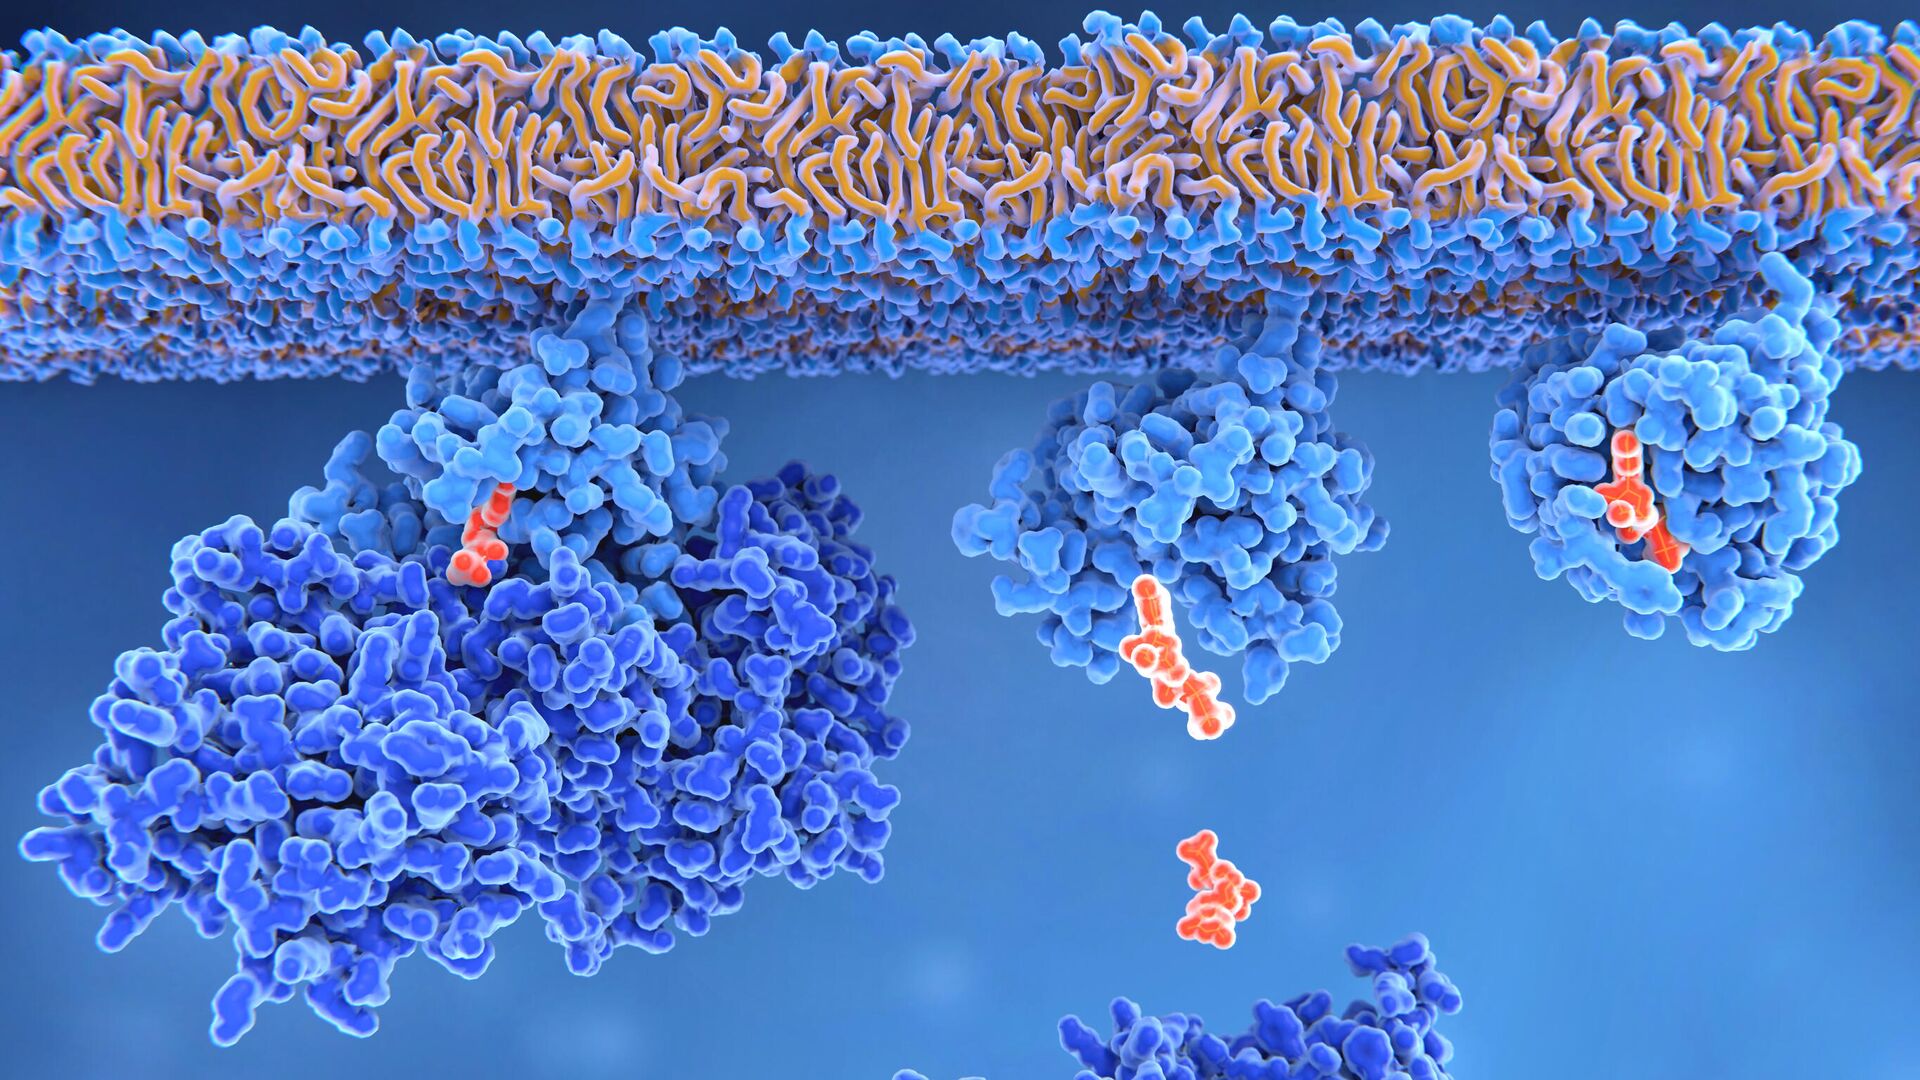 Белок, кодируемый геном RAS (справа), участвует в делении клеток. Впервые его обнаружили как онкоген — мутантный вариант гена, провоцирующий опухоль - РИА Новости, 1920, 17.10.2019